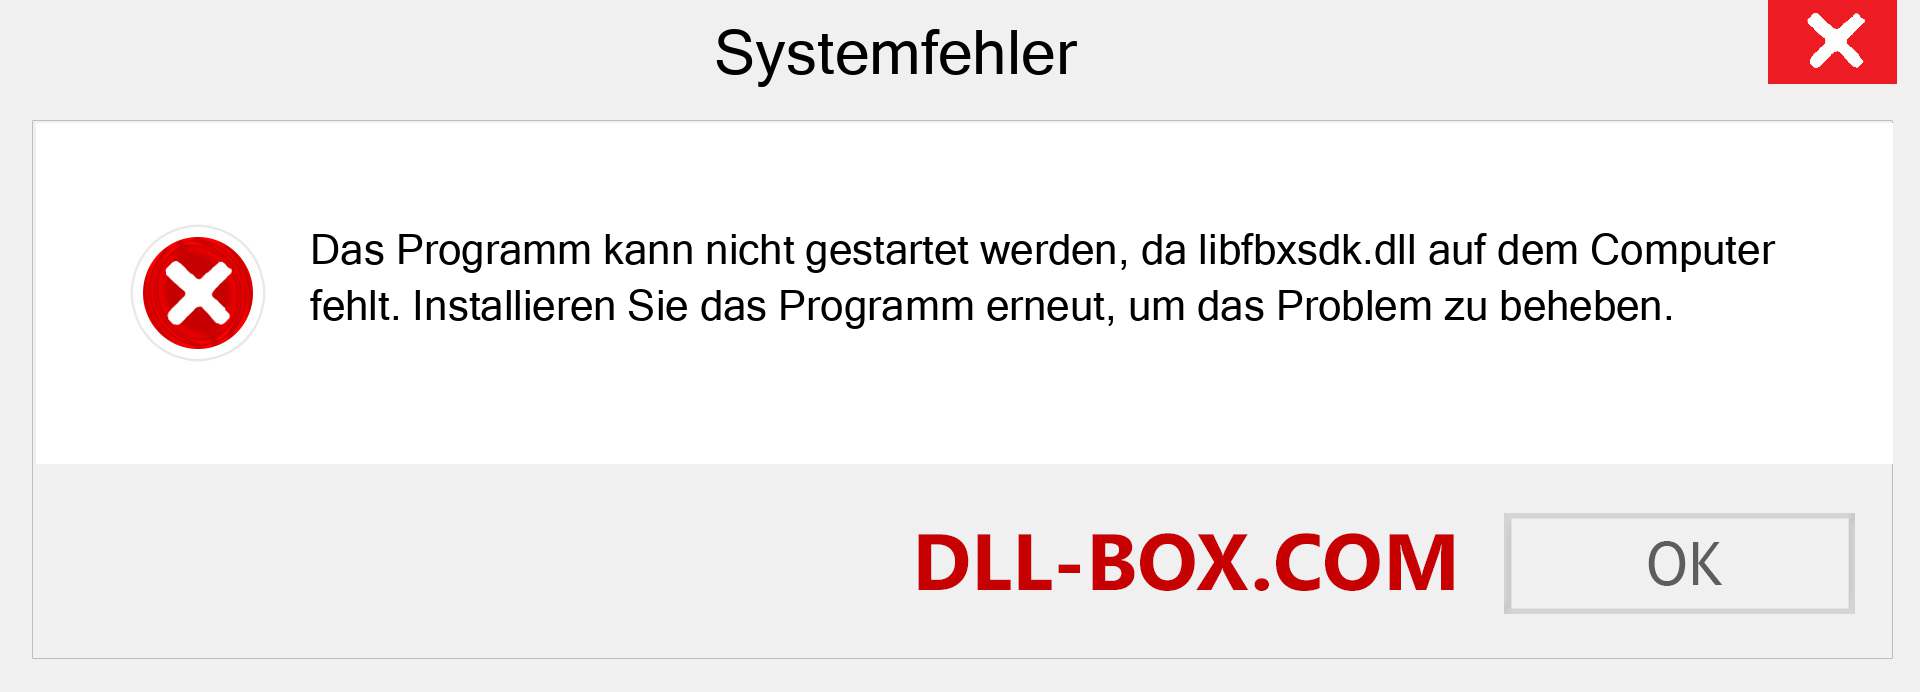 libfbxsdk.dll-Datei fehlt?. Download für Windows 7, 8, 10 - Fix libfbxsdk dll Missing Error unter Windows, Fotos, Bildern